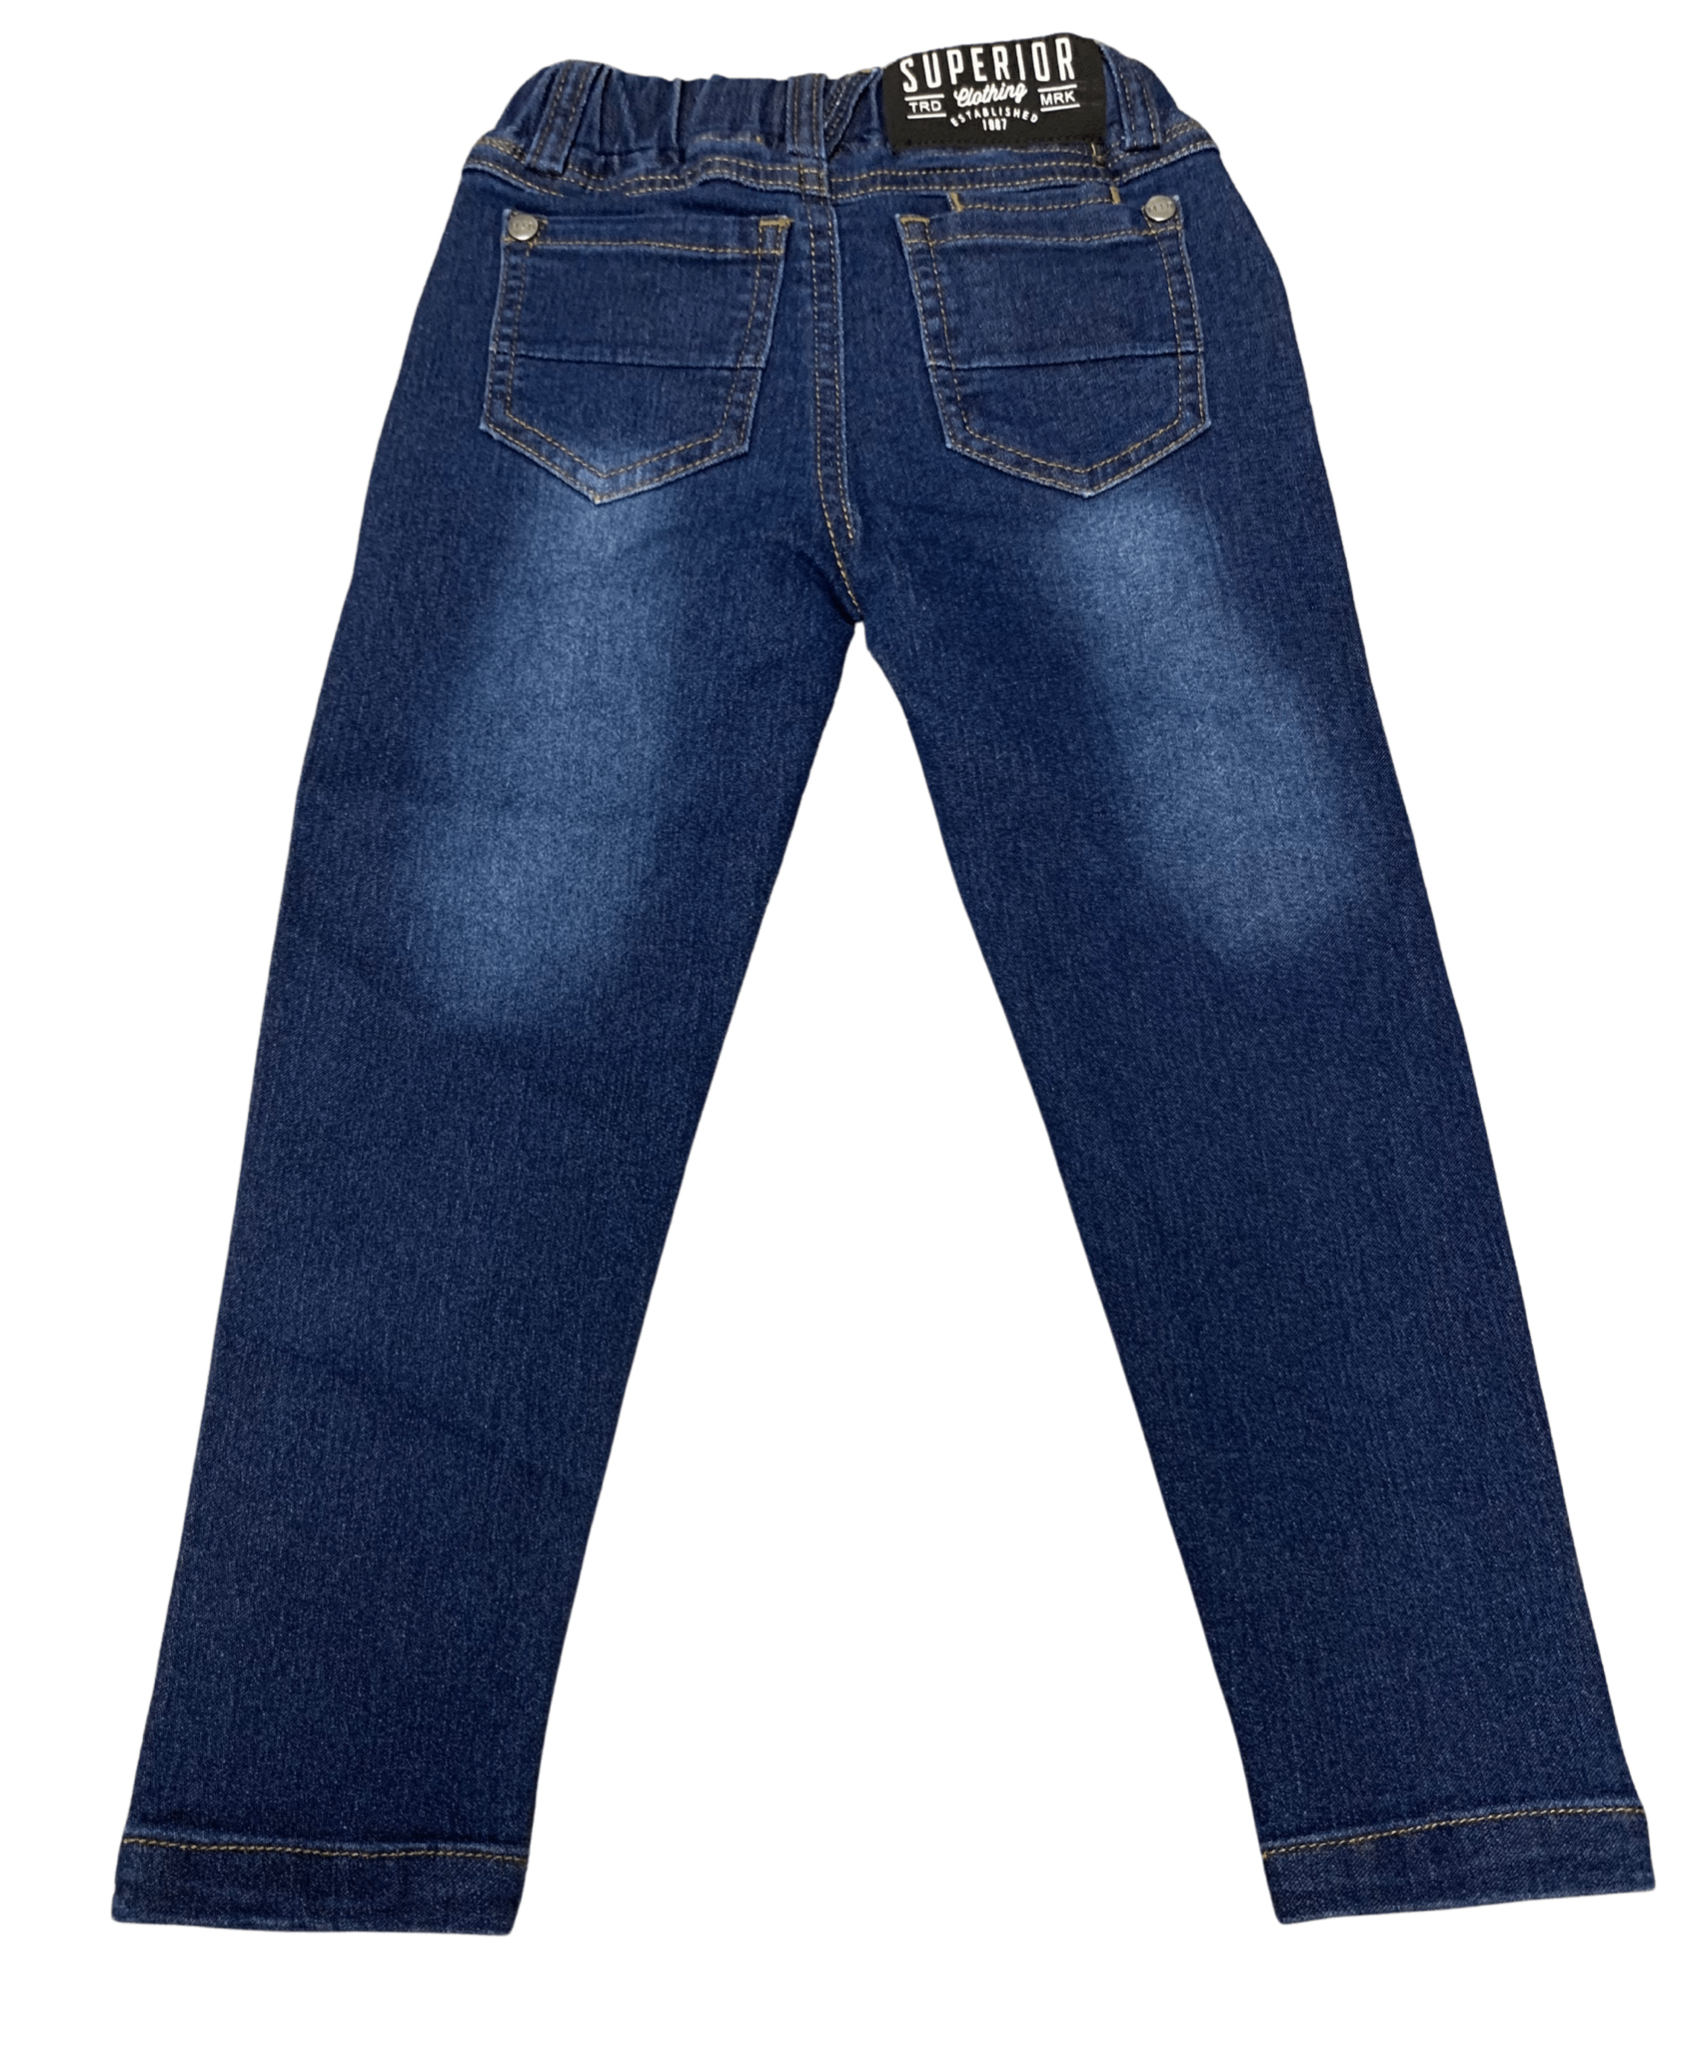 M.I.D - Pantalon en jean, bleu foncé